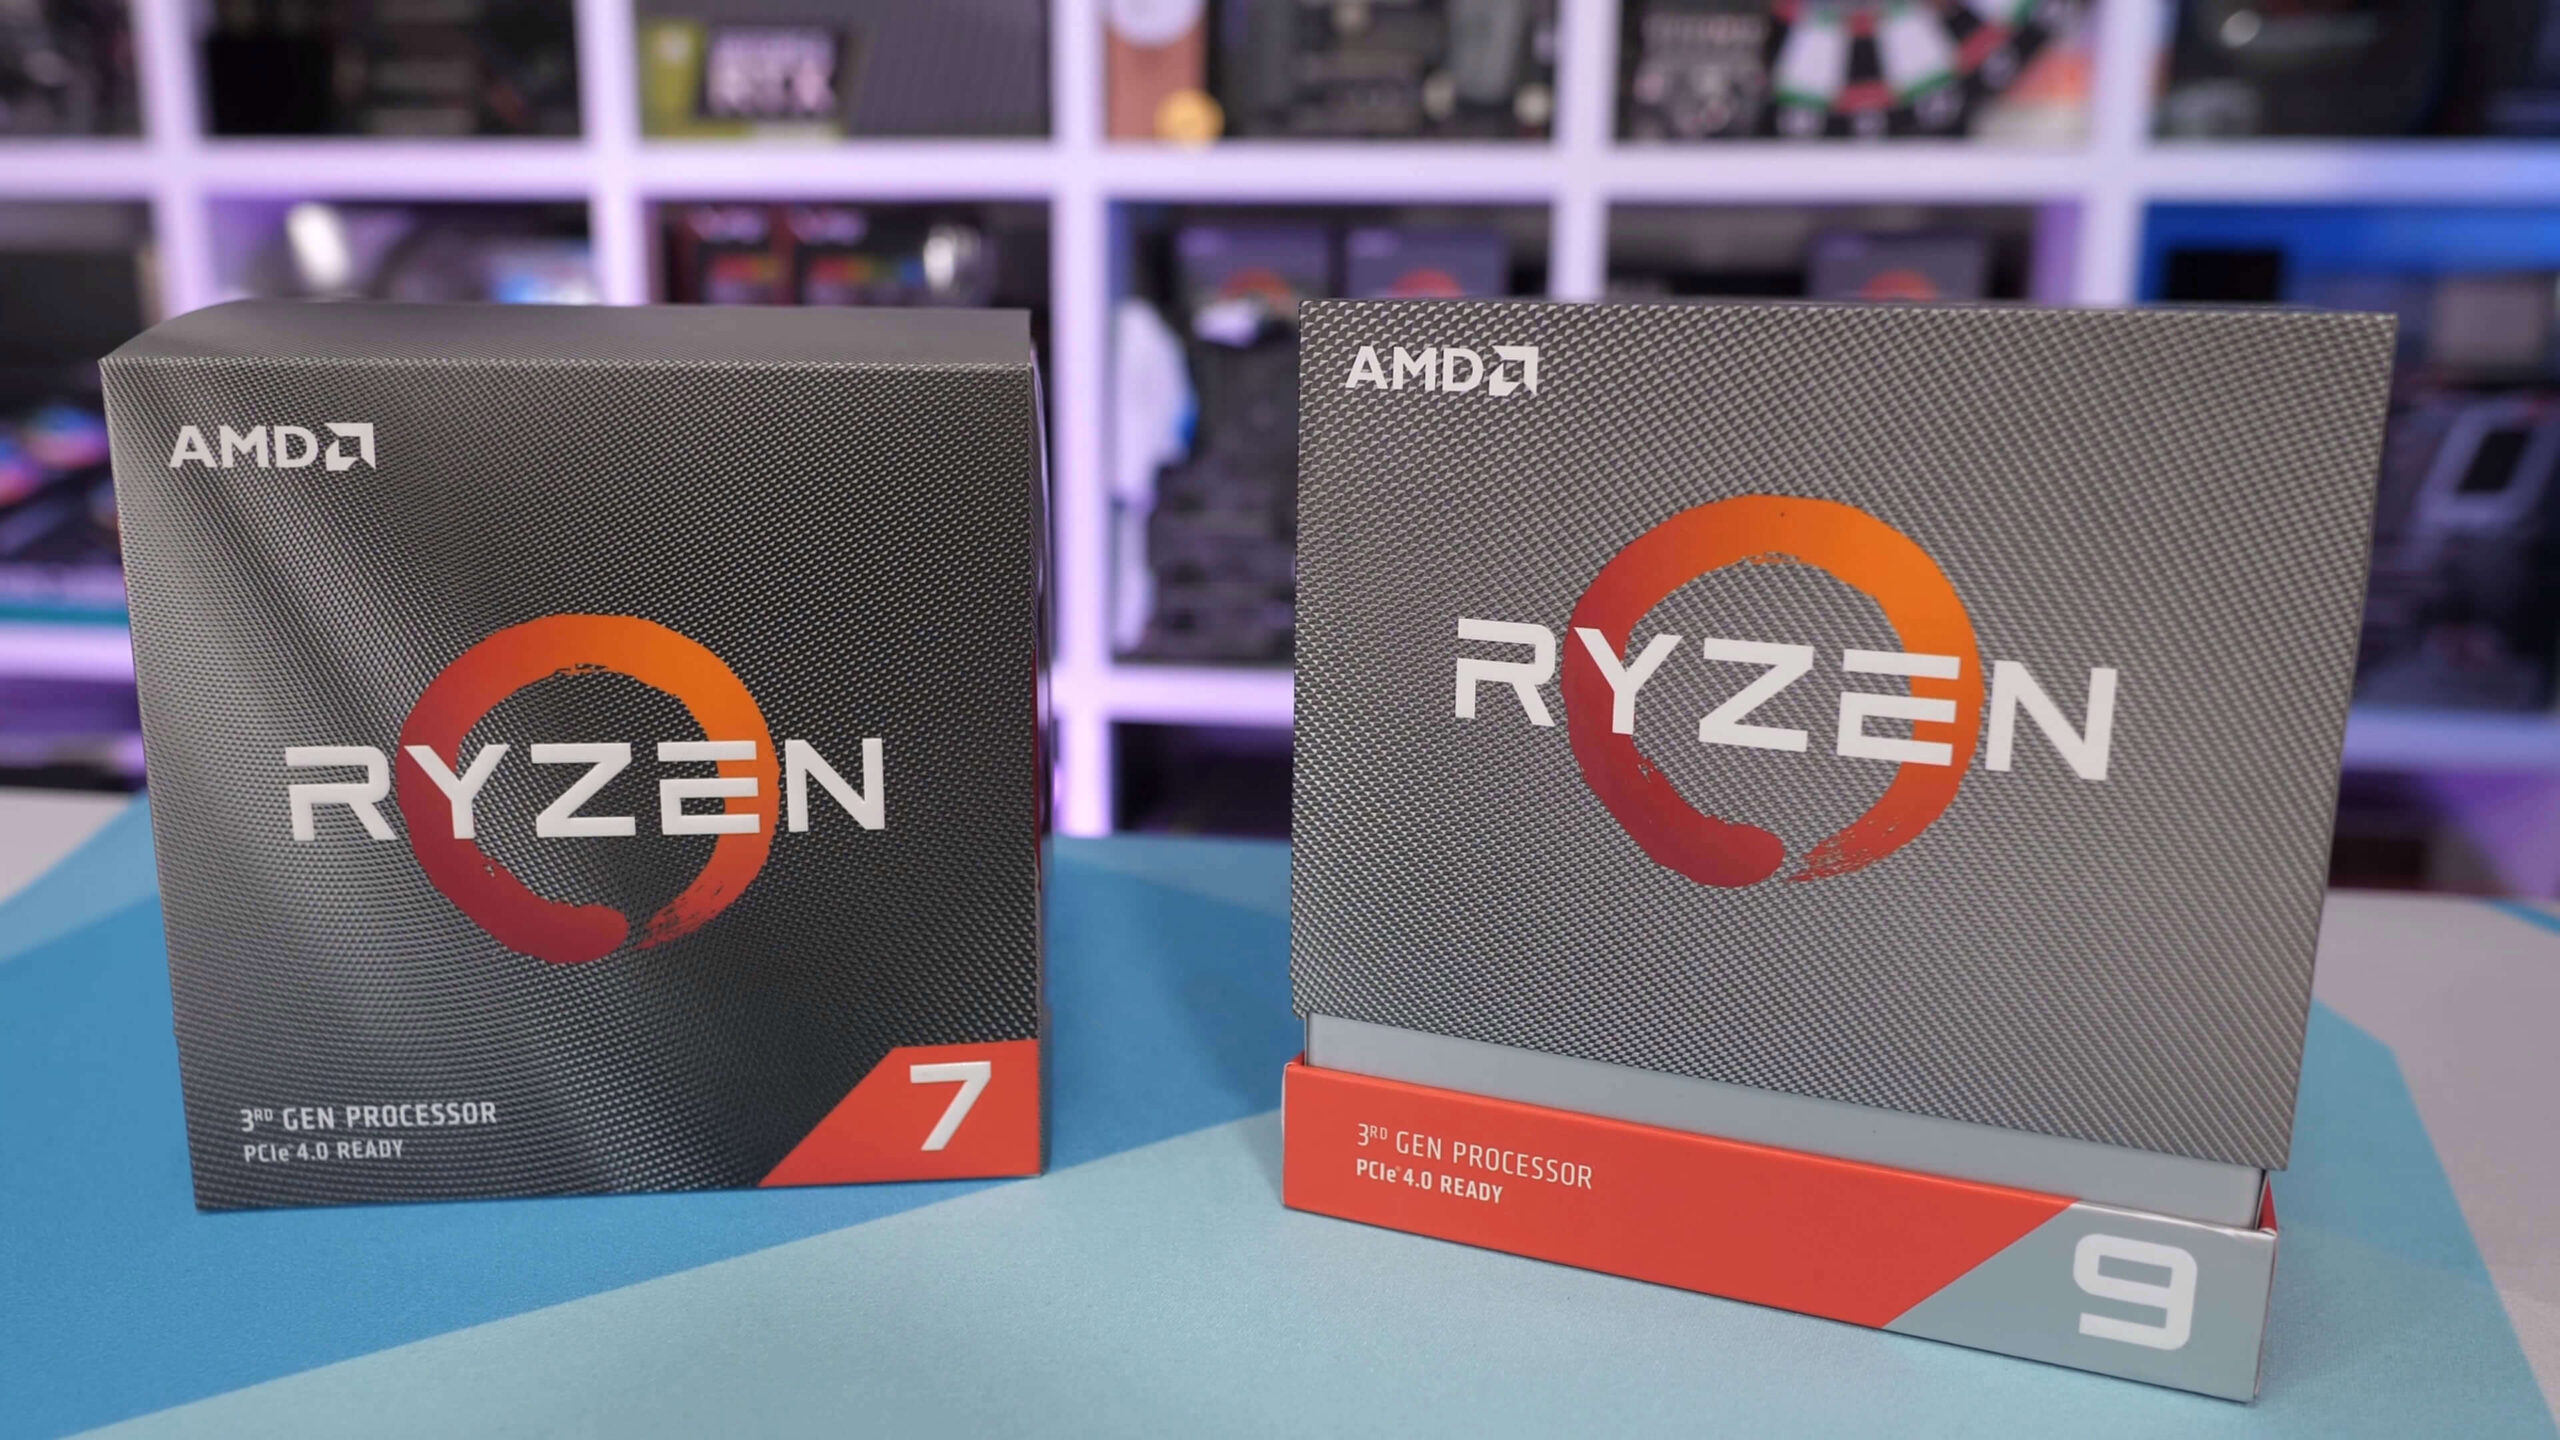 AMD desenvolve o Ryzen 9 4900HS com 8 núcleos, 16 threads e apenas 35 W